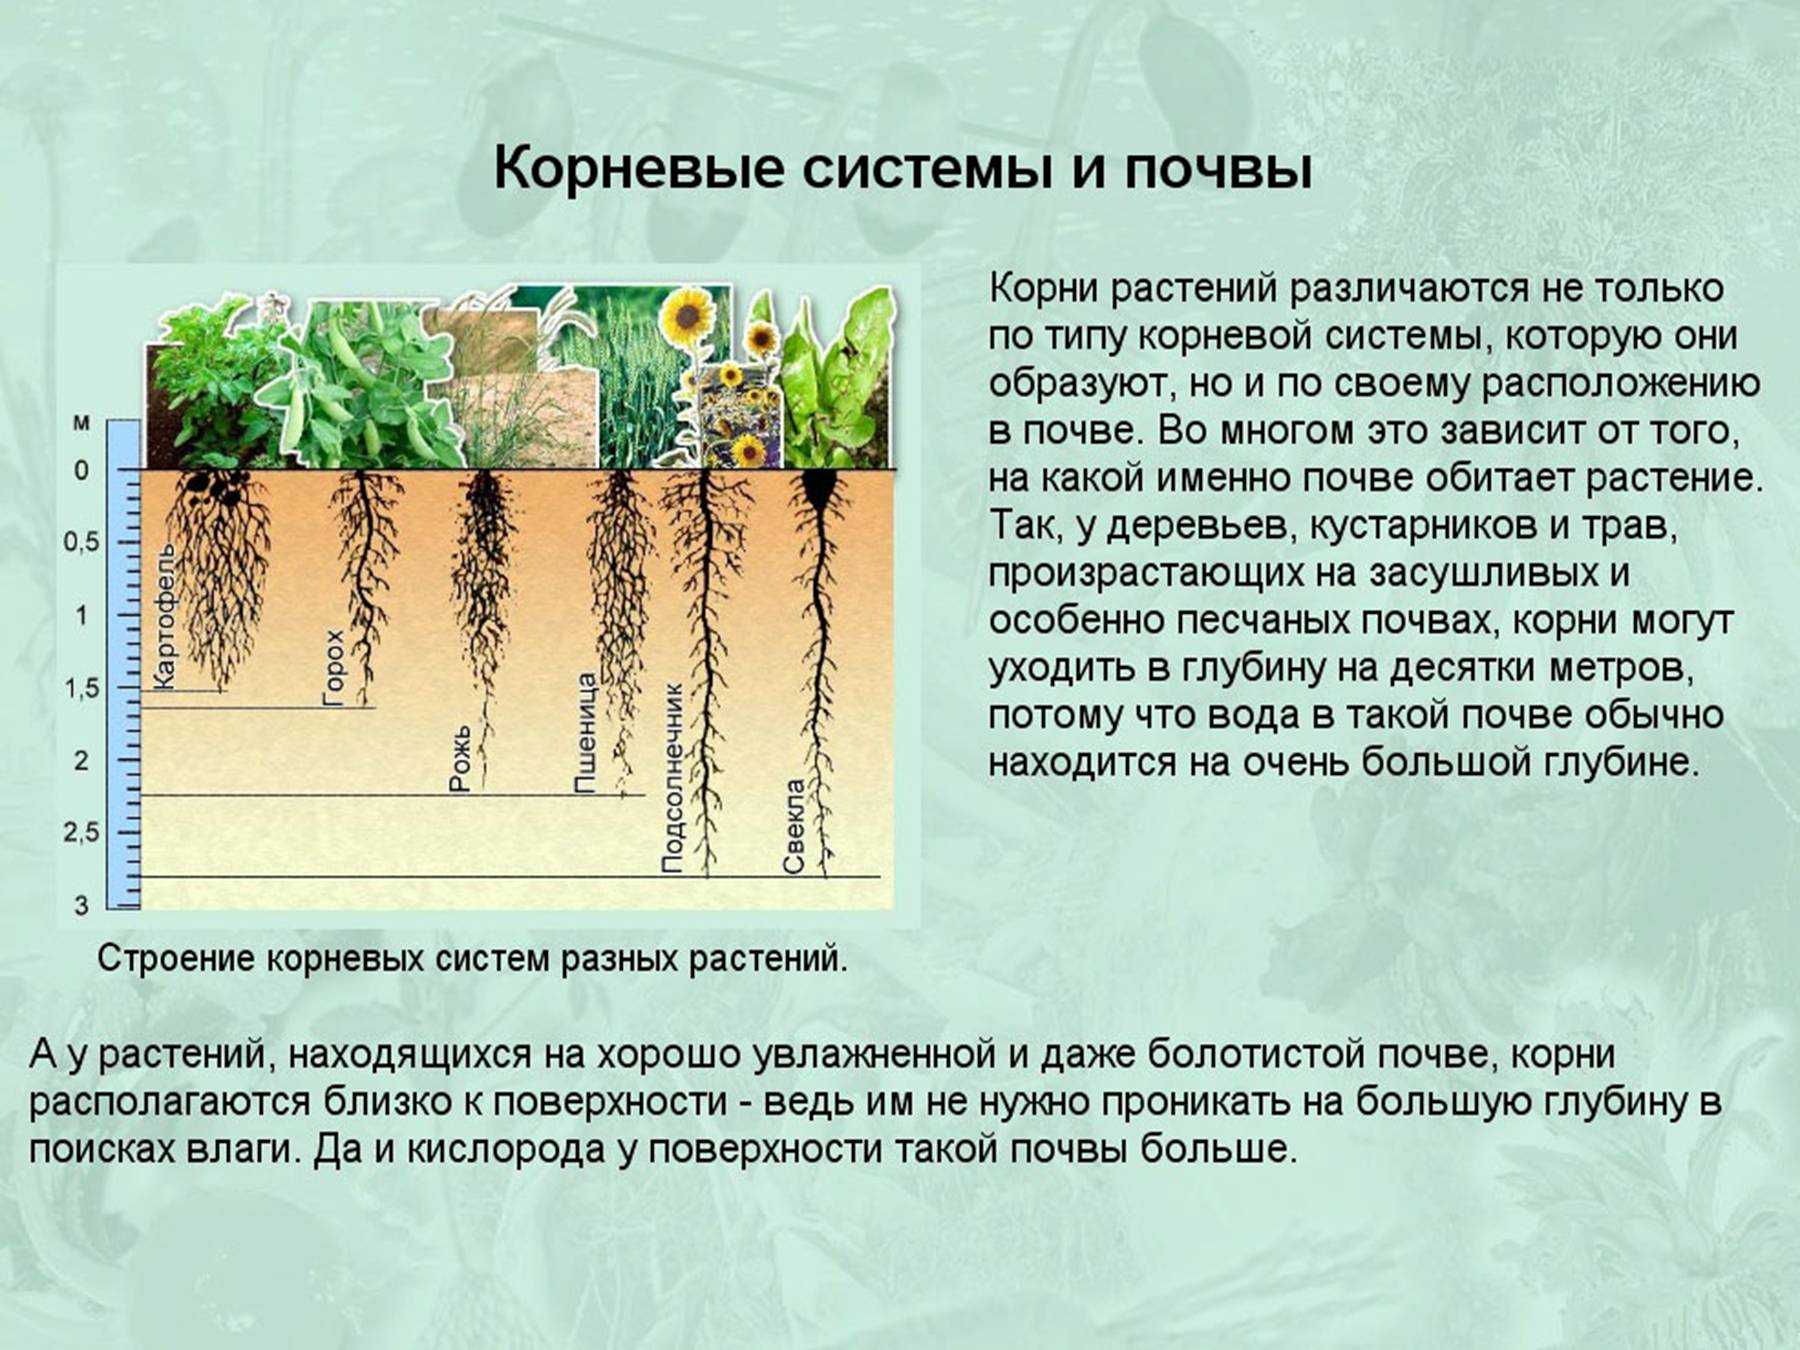 Насколько корень. Корневые системы растений. Глубина корневой системы. Корни растений в почве. Растения с поверхностной корневой системой.